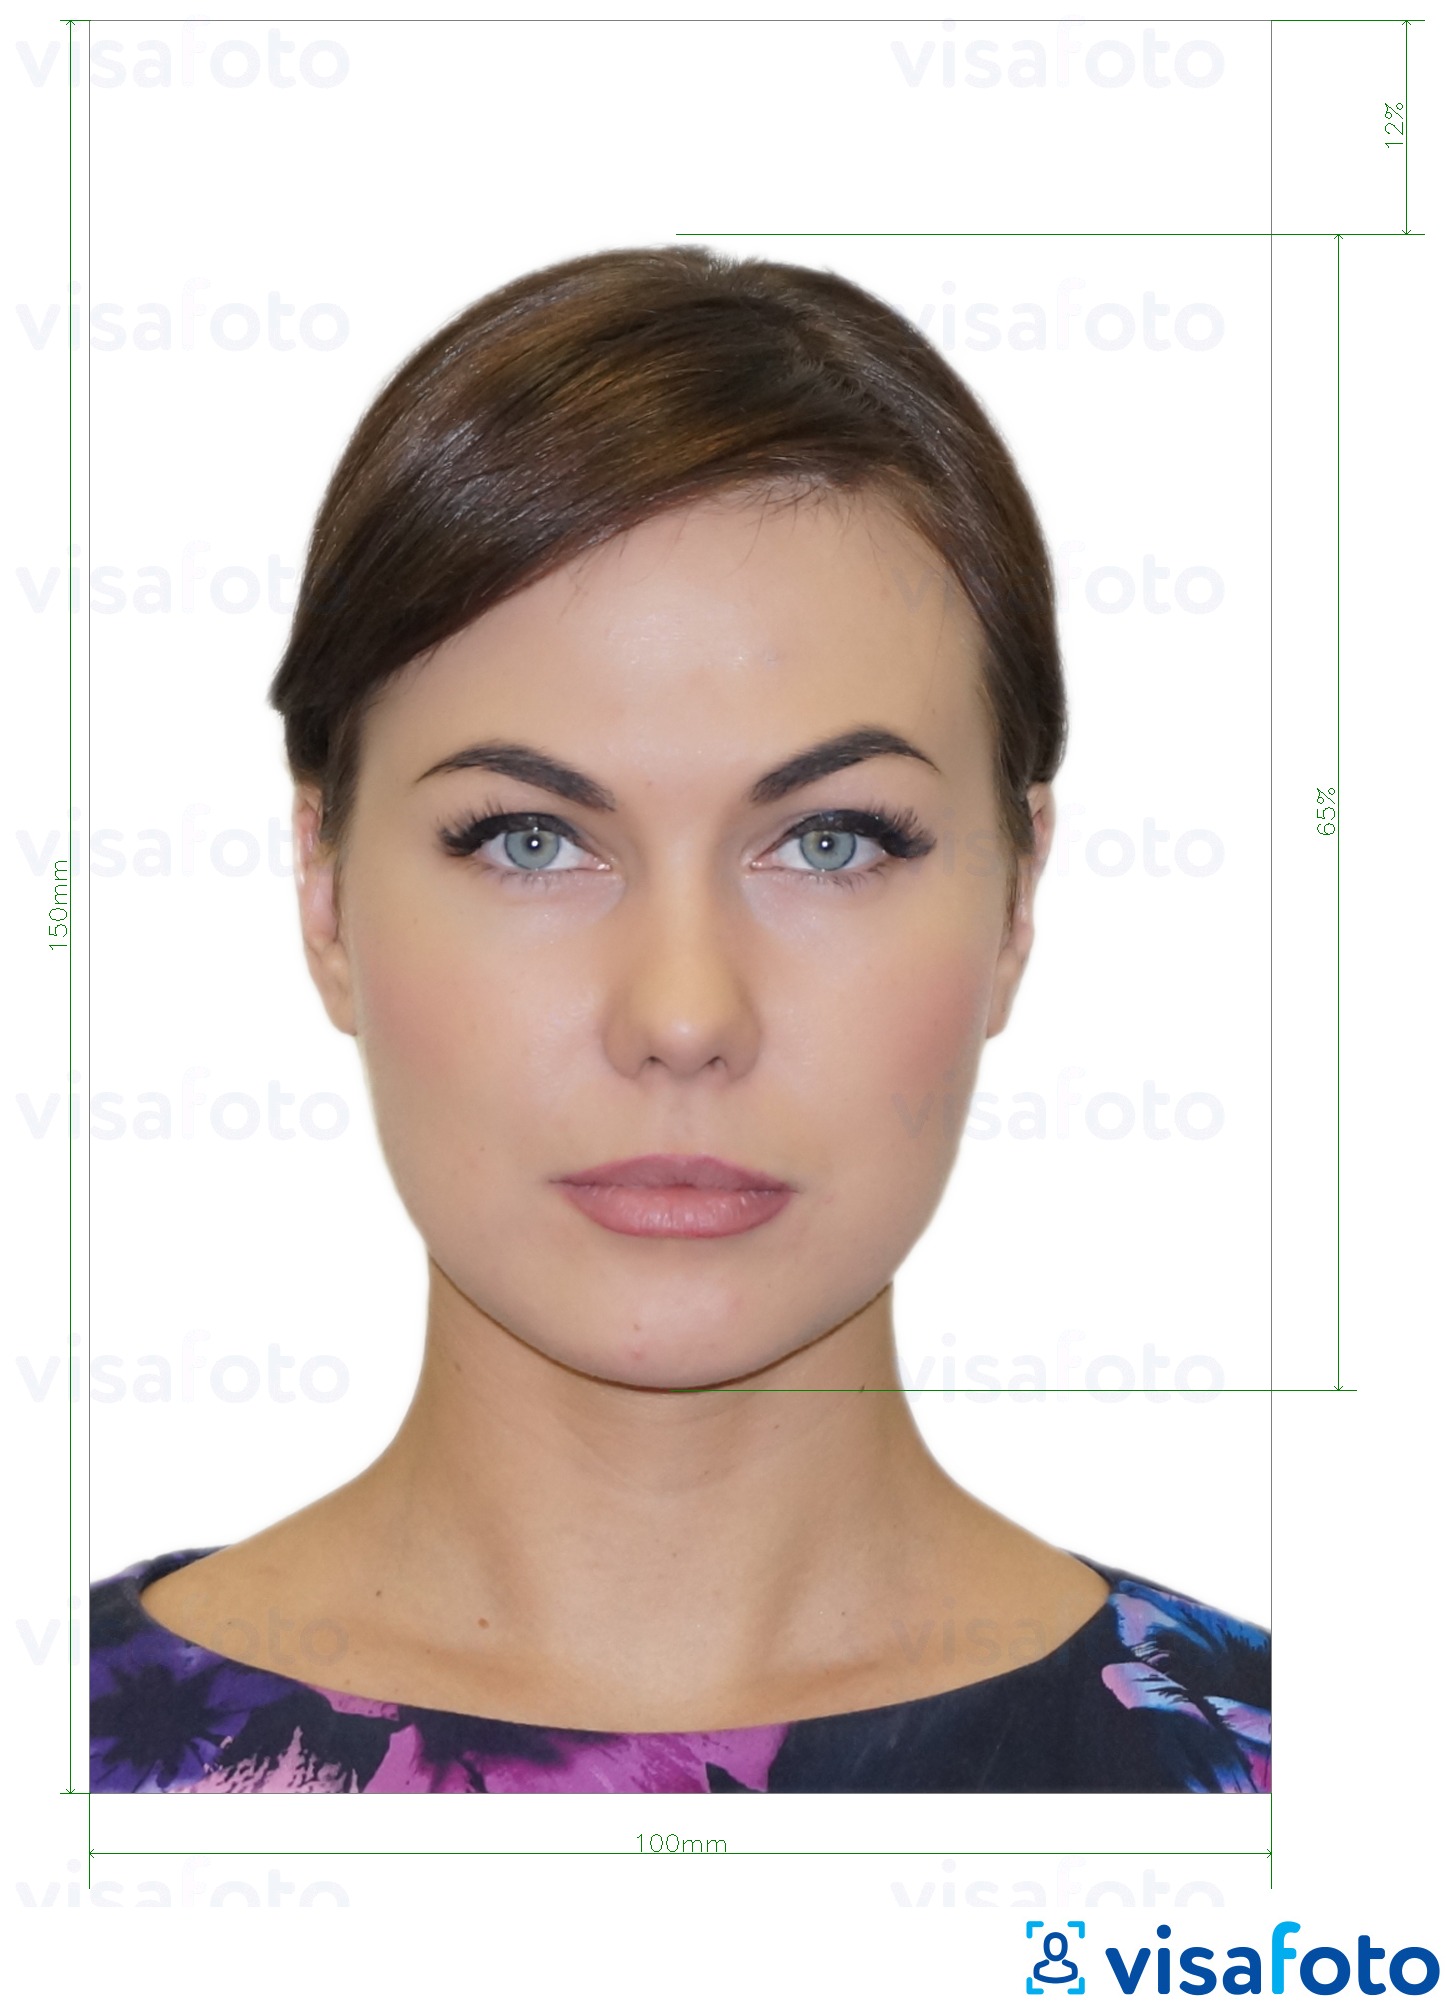 Primer fotografije za Moldova ID kartica (Buletin de identitate) 10x15 cm z natančno specifikacijo velikosti